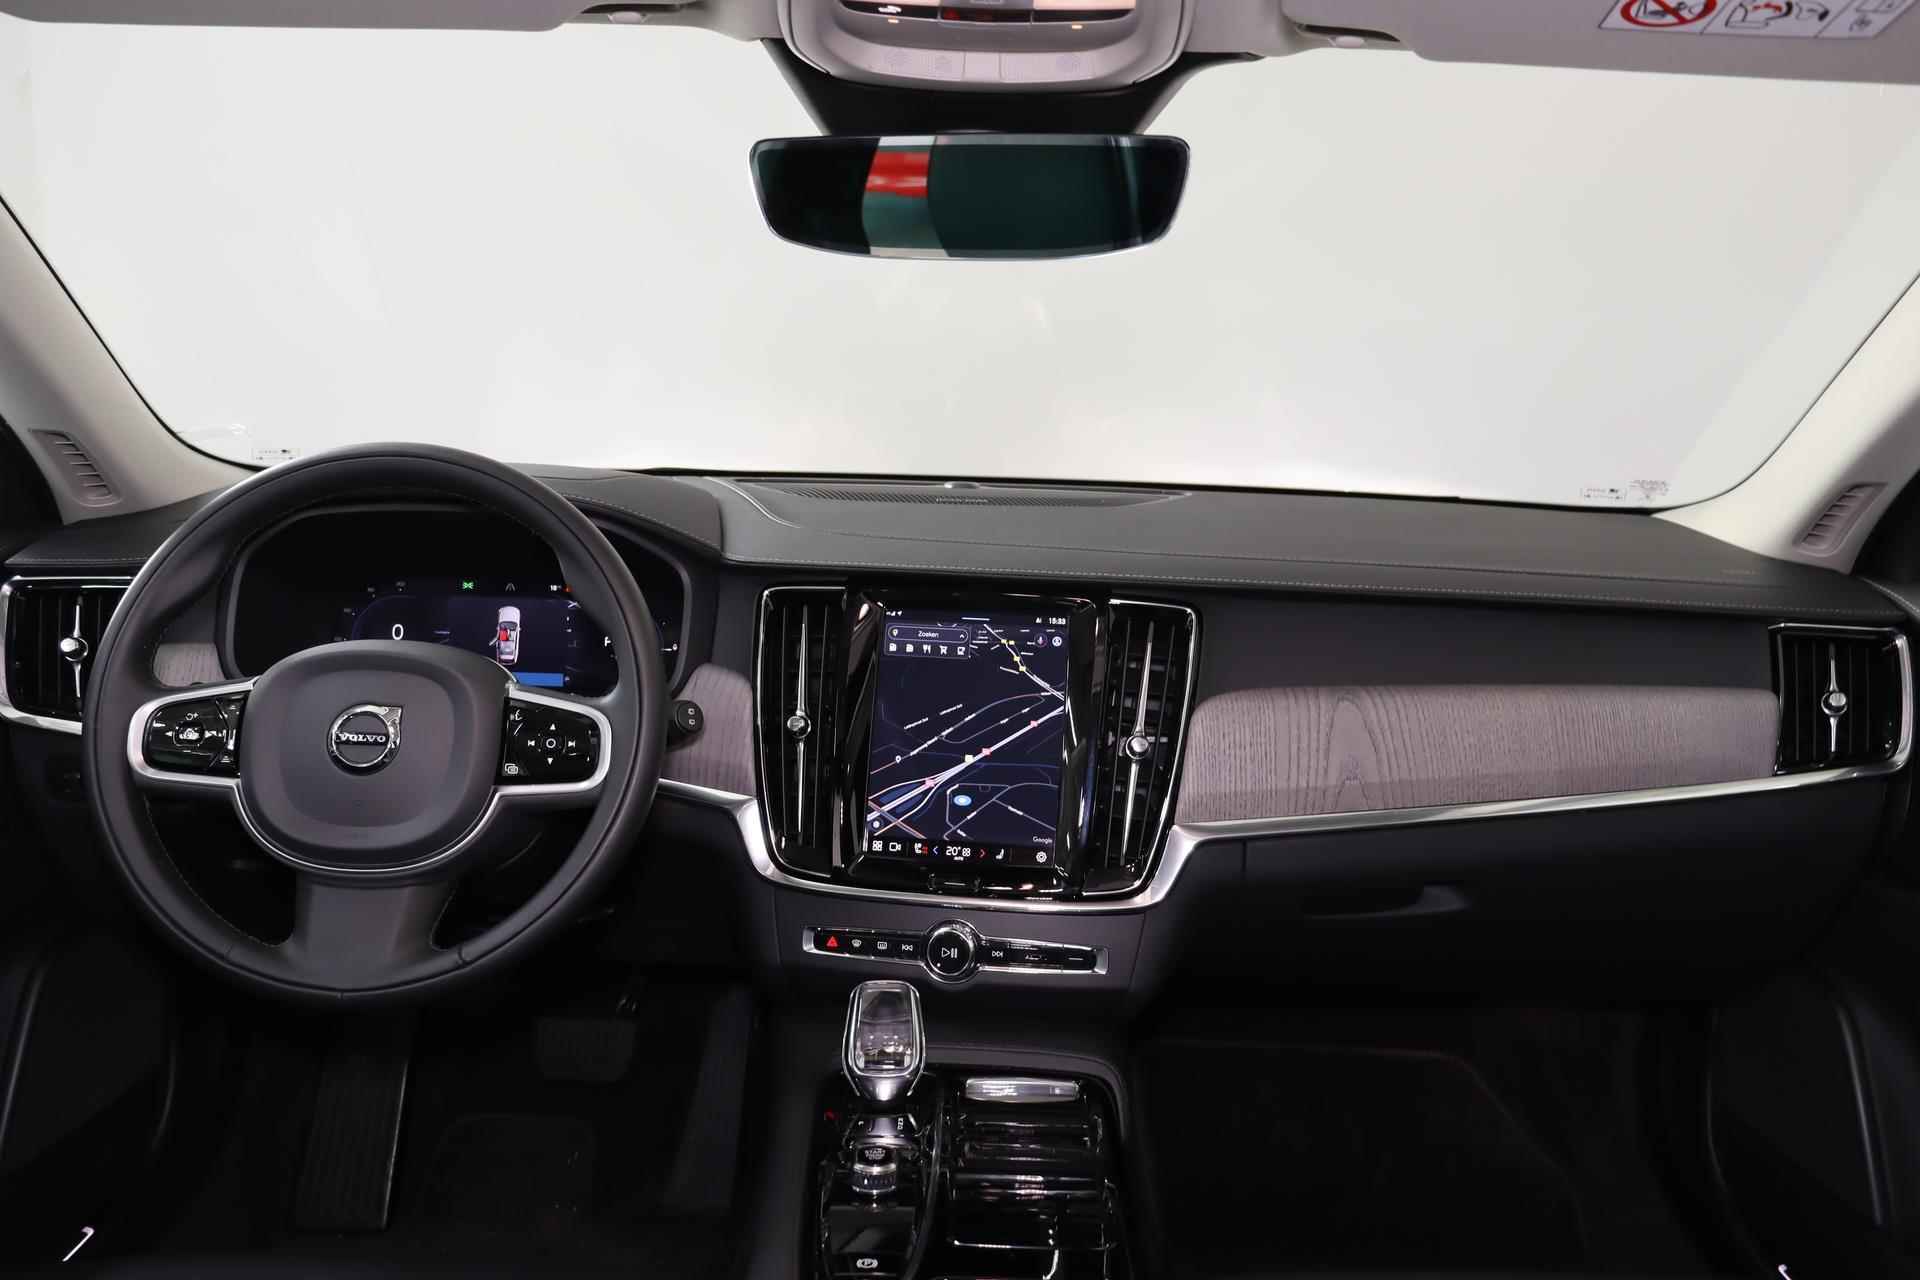 Volvo V90 T6 AWD Recharge Inscription - Panorama/schuifdak - IntelliSafe Assist & Surround - Harman/Kardon audio - Adaptieve LED koplampen - Parkeercamera achter - Verwarmde voorstoelen & stuur - Parkeersensoren voor & achter - Elektr. bedienb. voorstoelen met geheugen - Standkachel - 19' LMV - 30/33